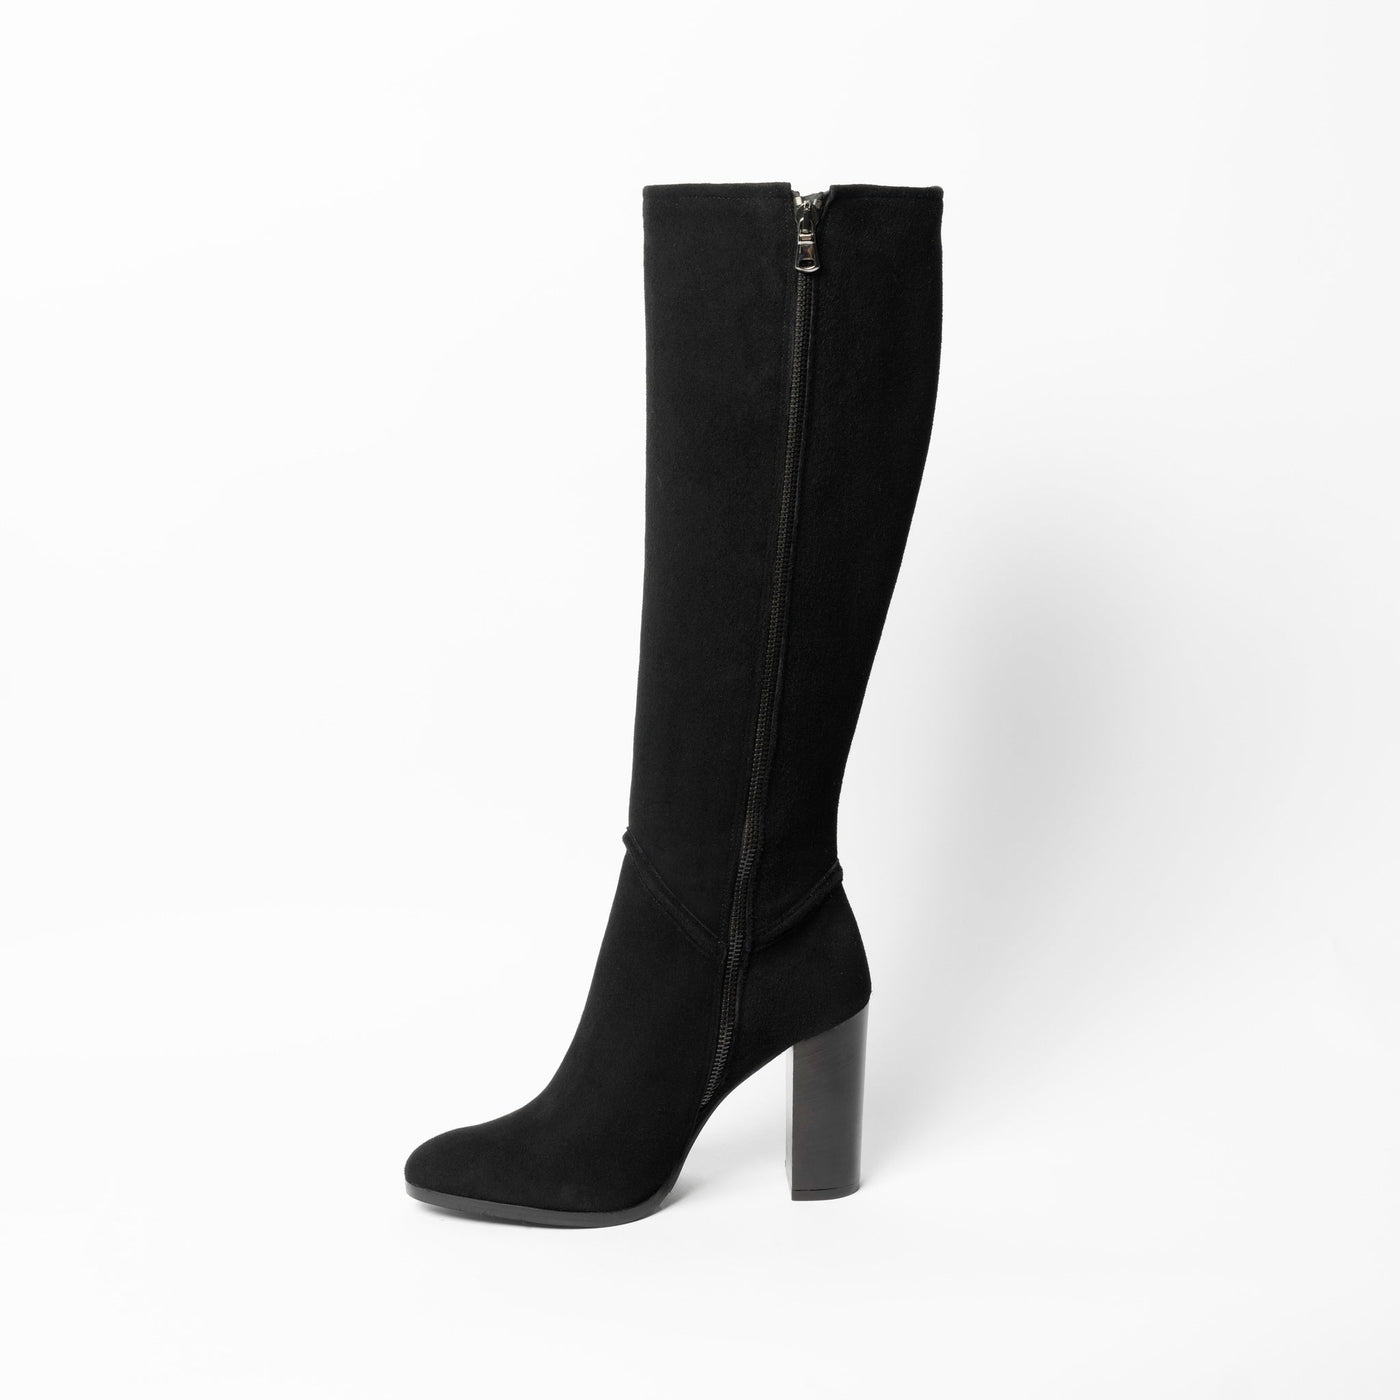 Knee-high black suede boots with 10 mm block heel. 